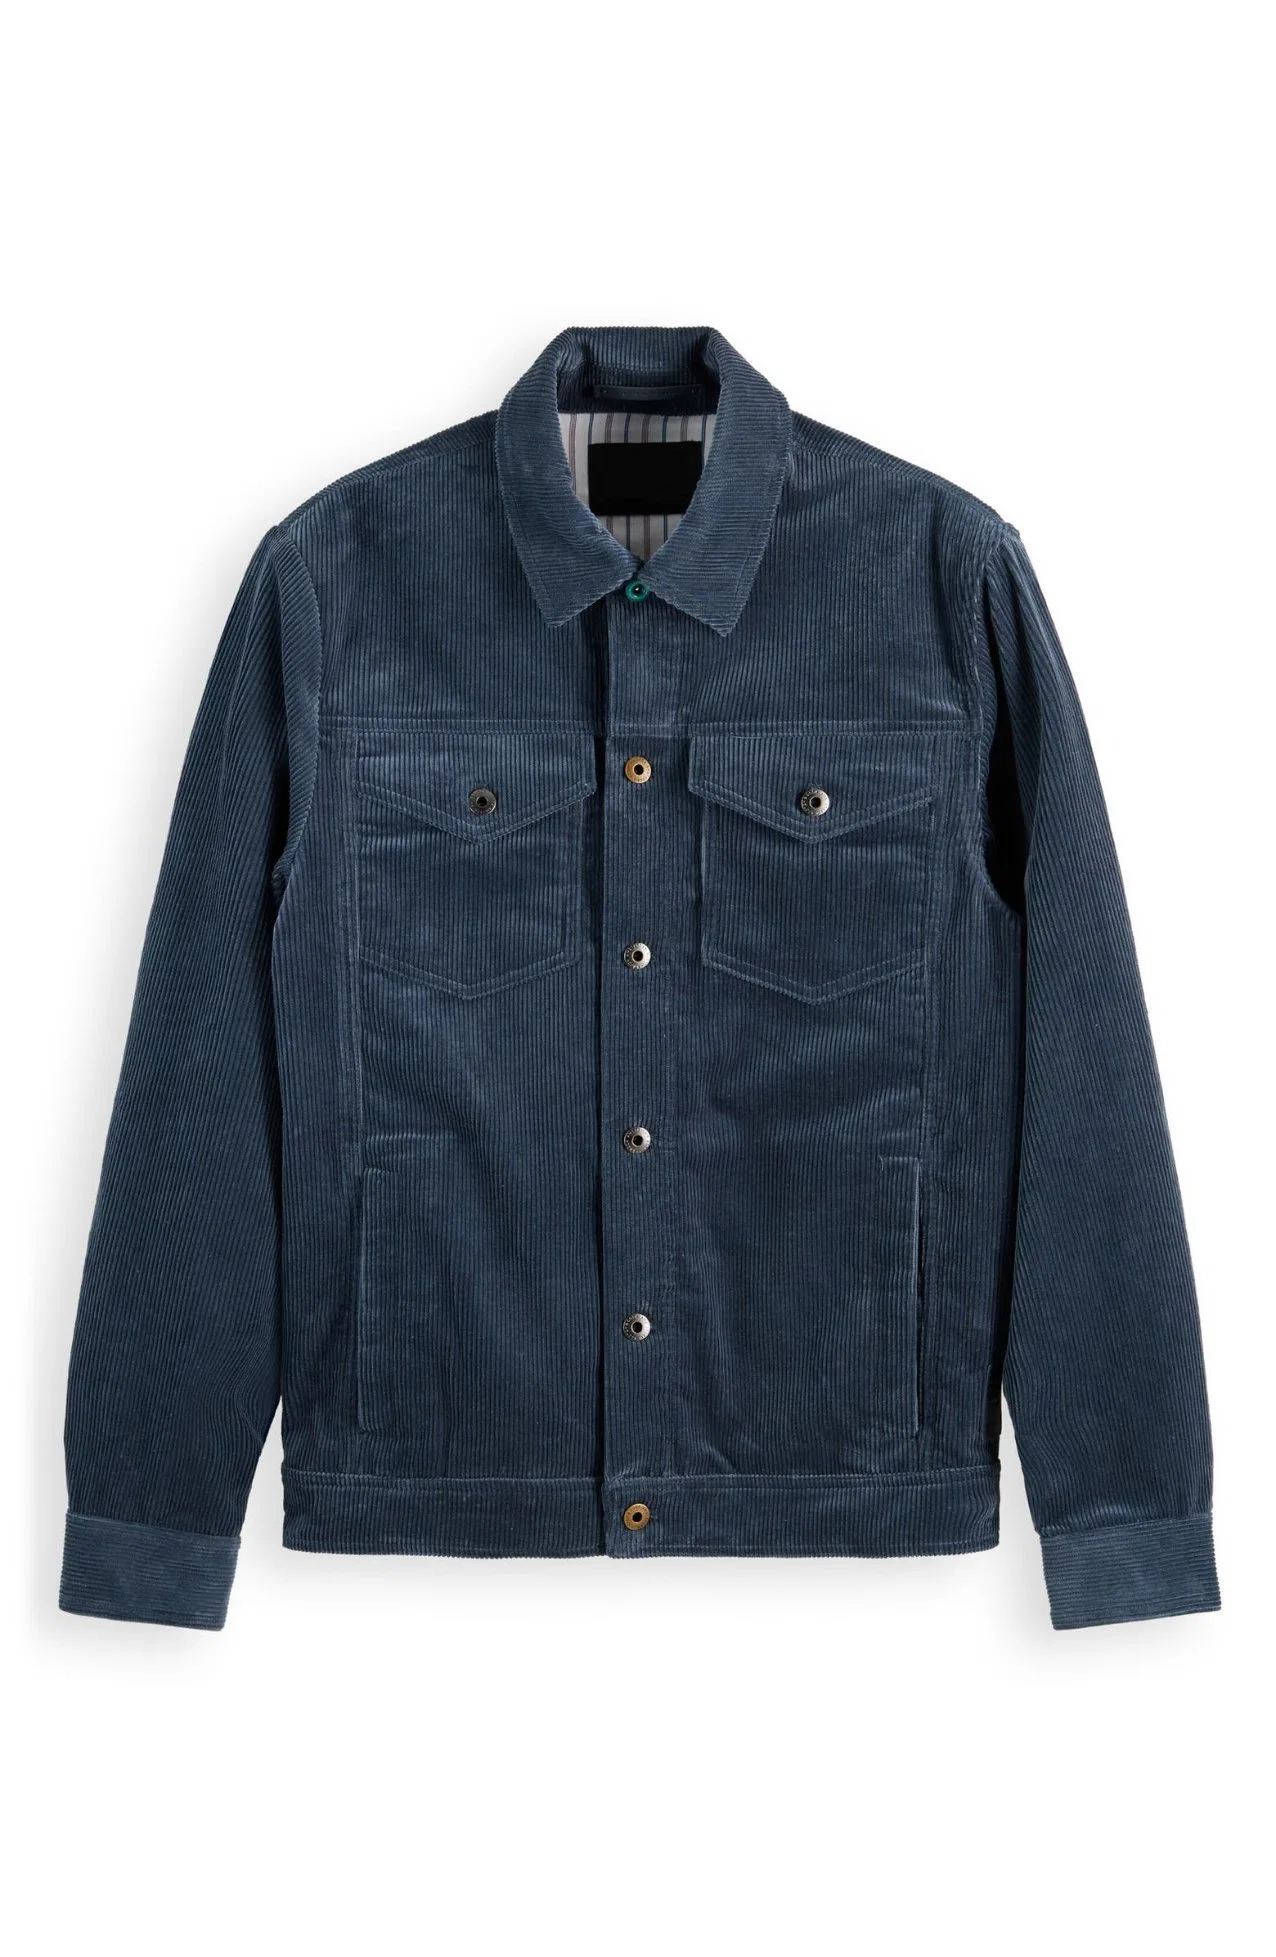 Custom Trucker Jacket Fashion Clothing Shirt Style Corduroy Jackets